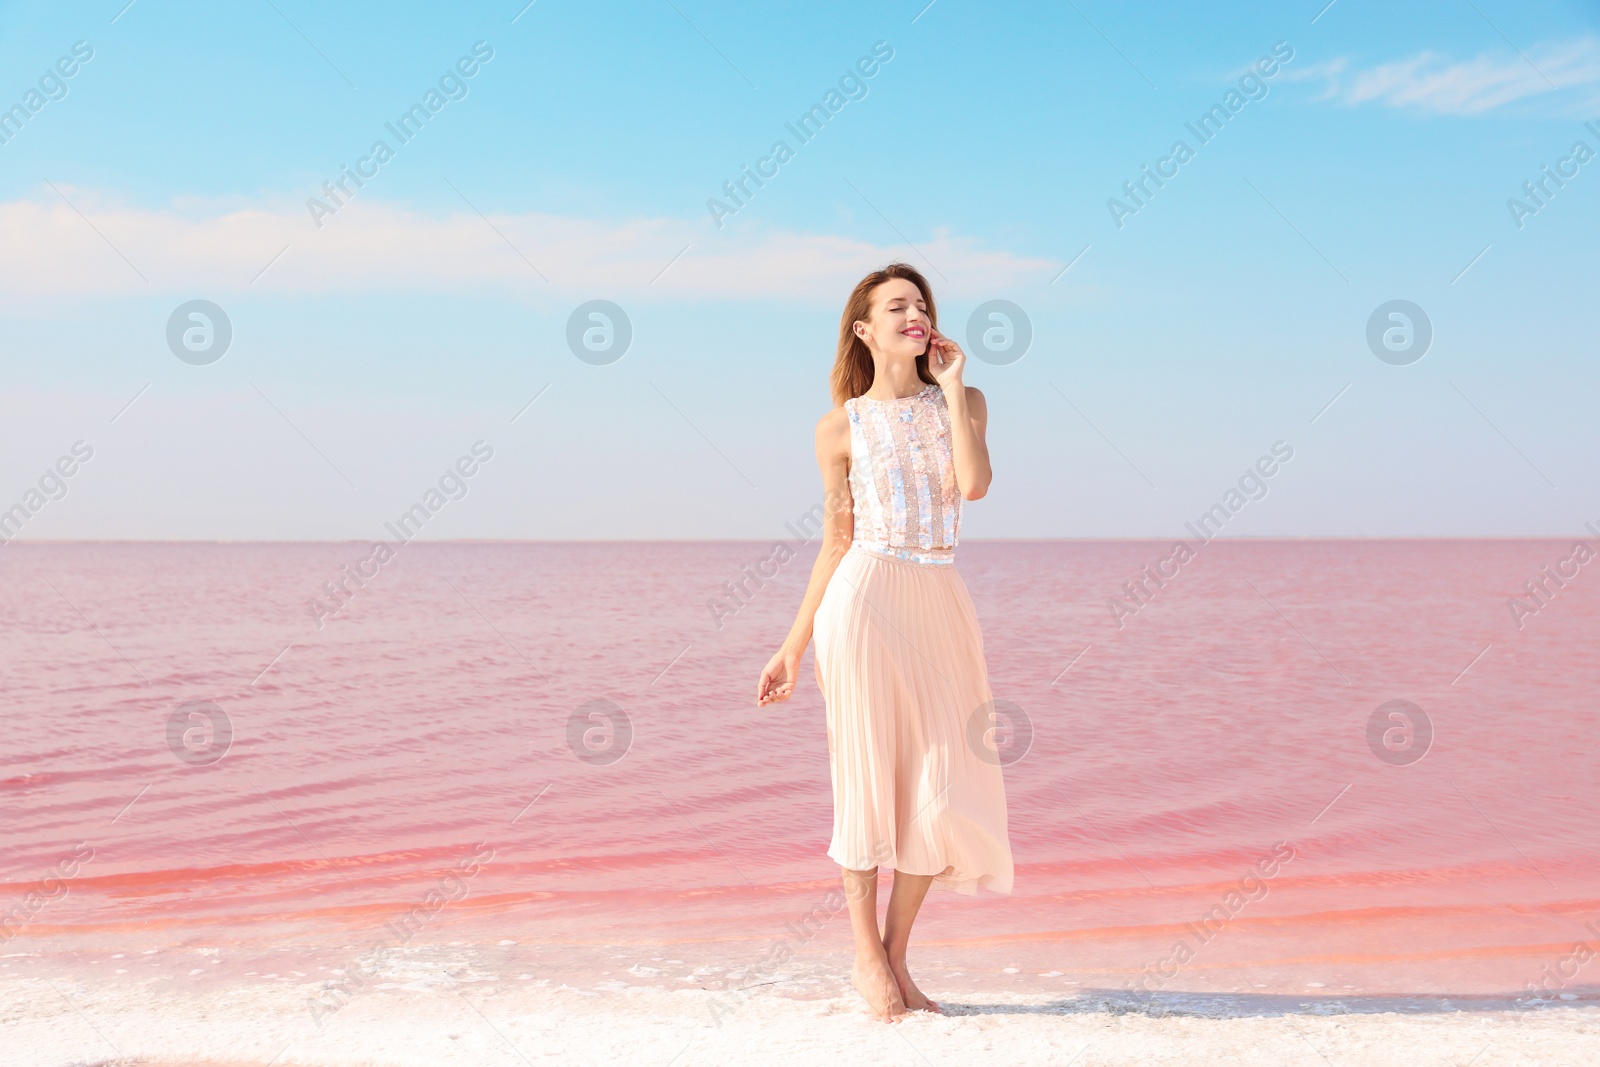 Photo of Beautiful woman posing near pink lake on sunny day